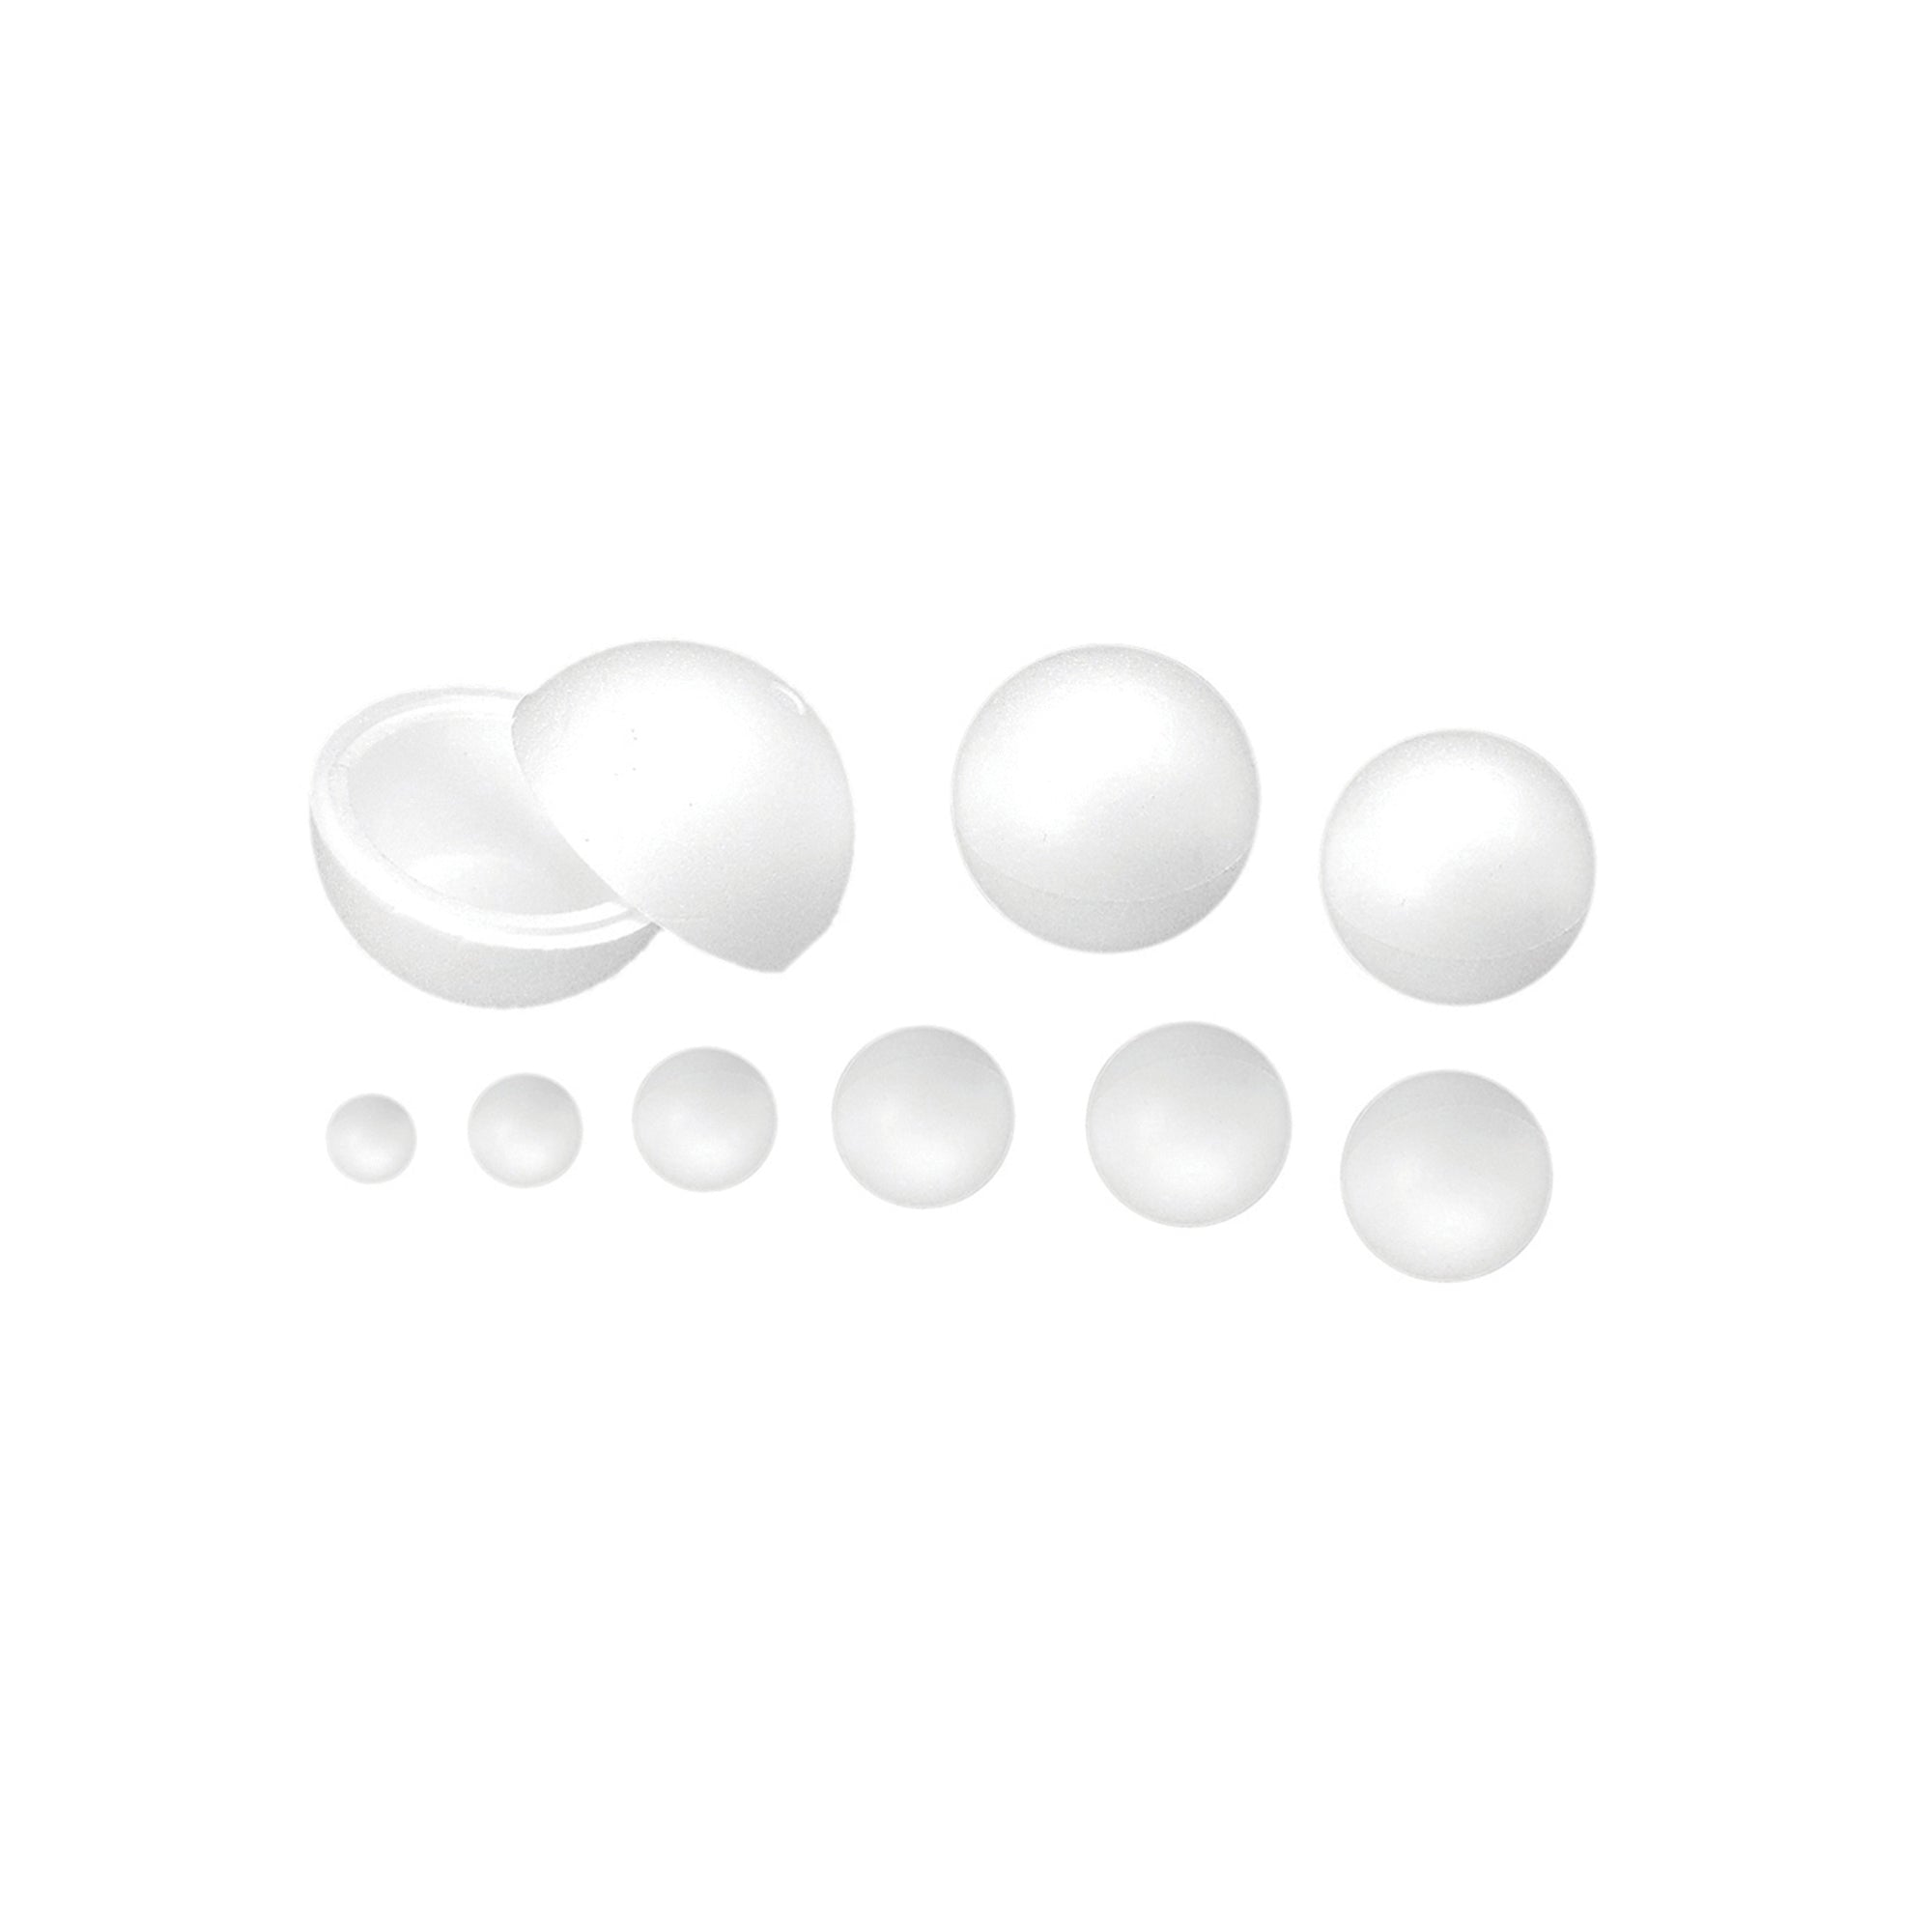 ri-plast-sfera-polistirolo-espanso-d20mm-ri-plast